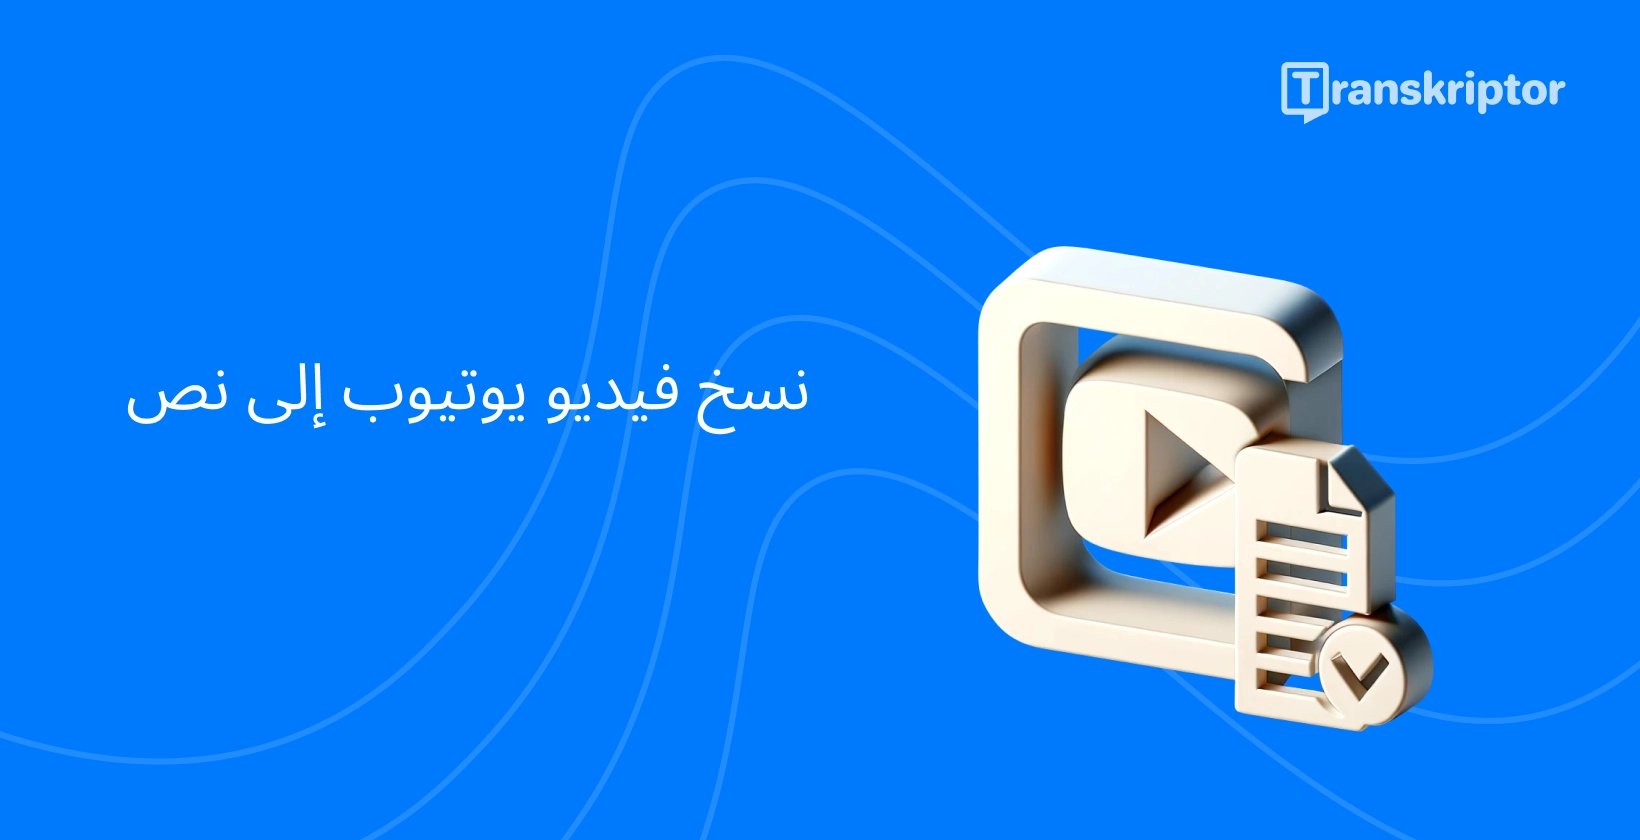 أيقونة خدمات النسخ مع زر التشغيل والمستند الذي يرمز YouTube تحويل الفيديو إلى نص.